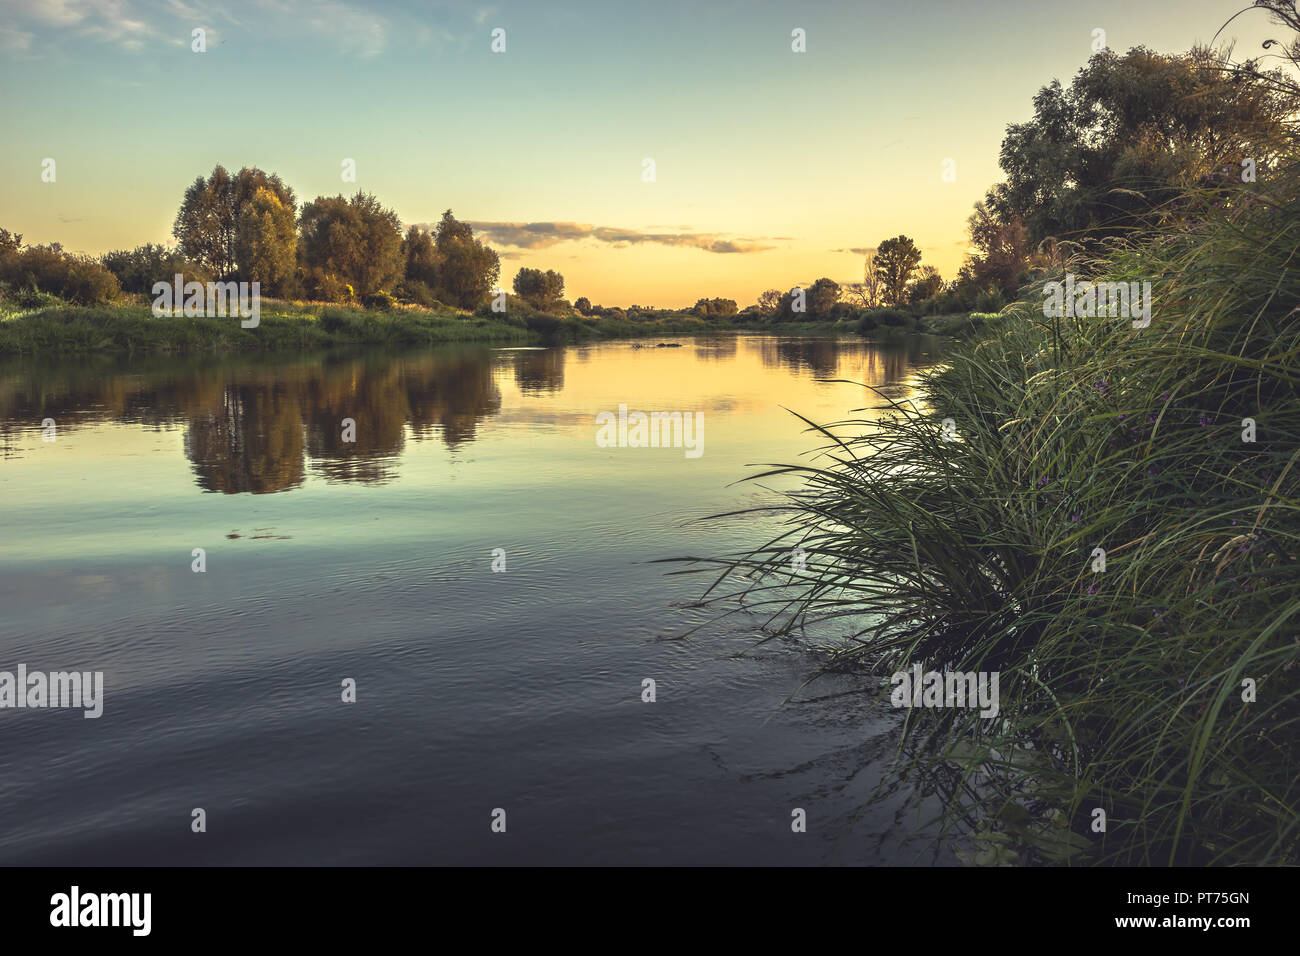 Stagione estiva campagna rustica fiume calmo paesaggio tramonto con cielo chiaro riflessioni riverbank in stile vintage Foto Stock